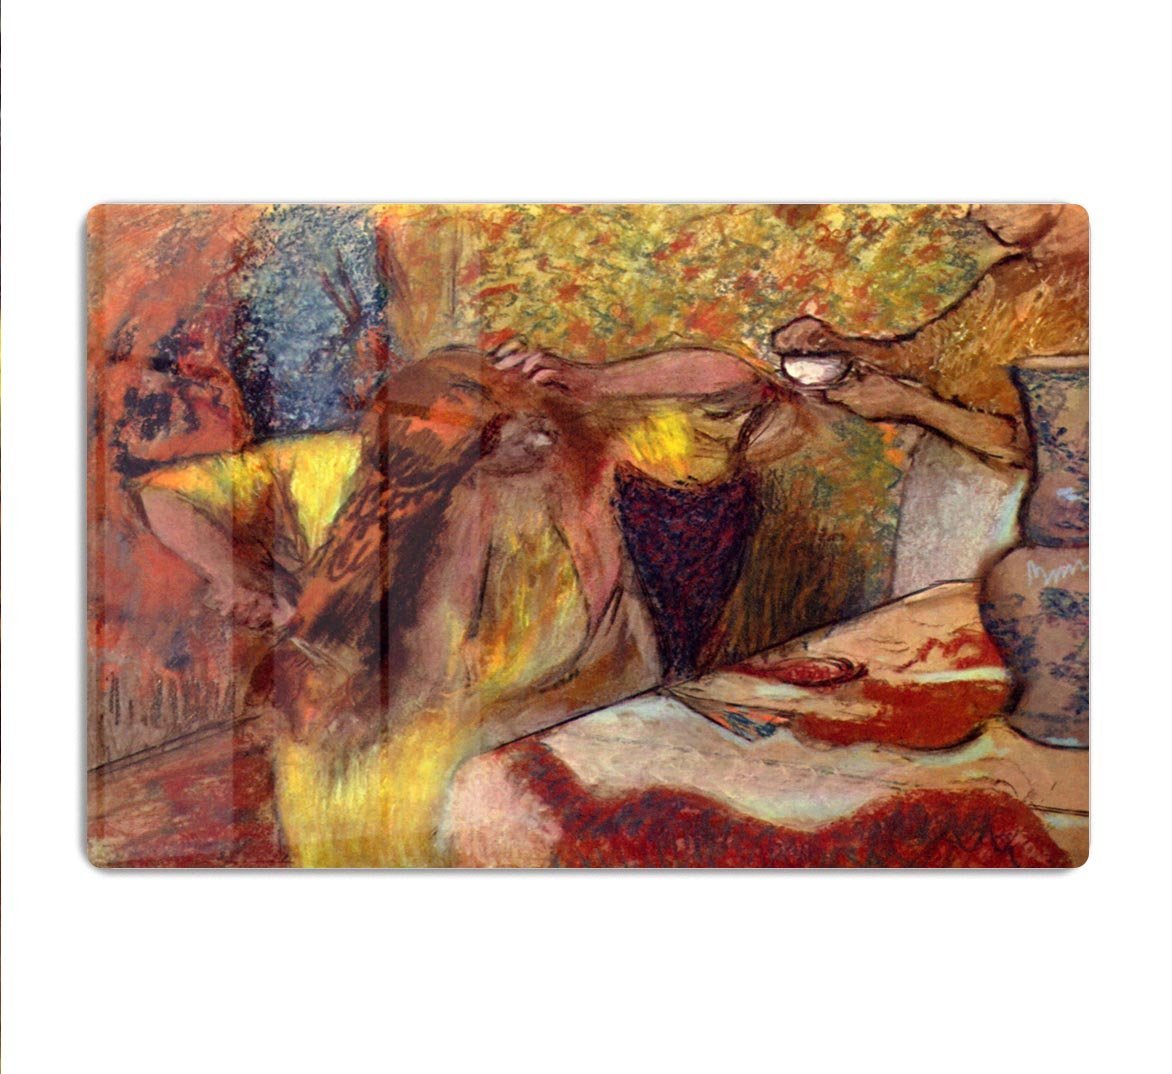 Women at the toilet 1 by Degas HD Metal Print - Canvas Art Rocks - 1